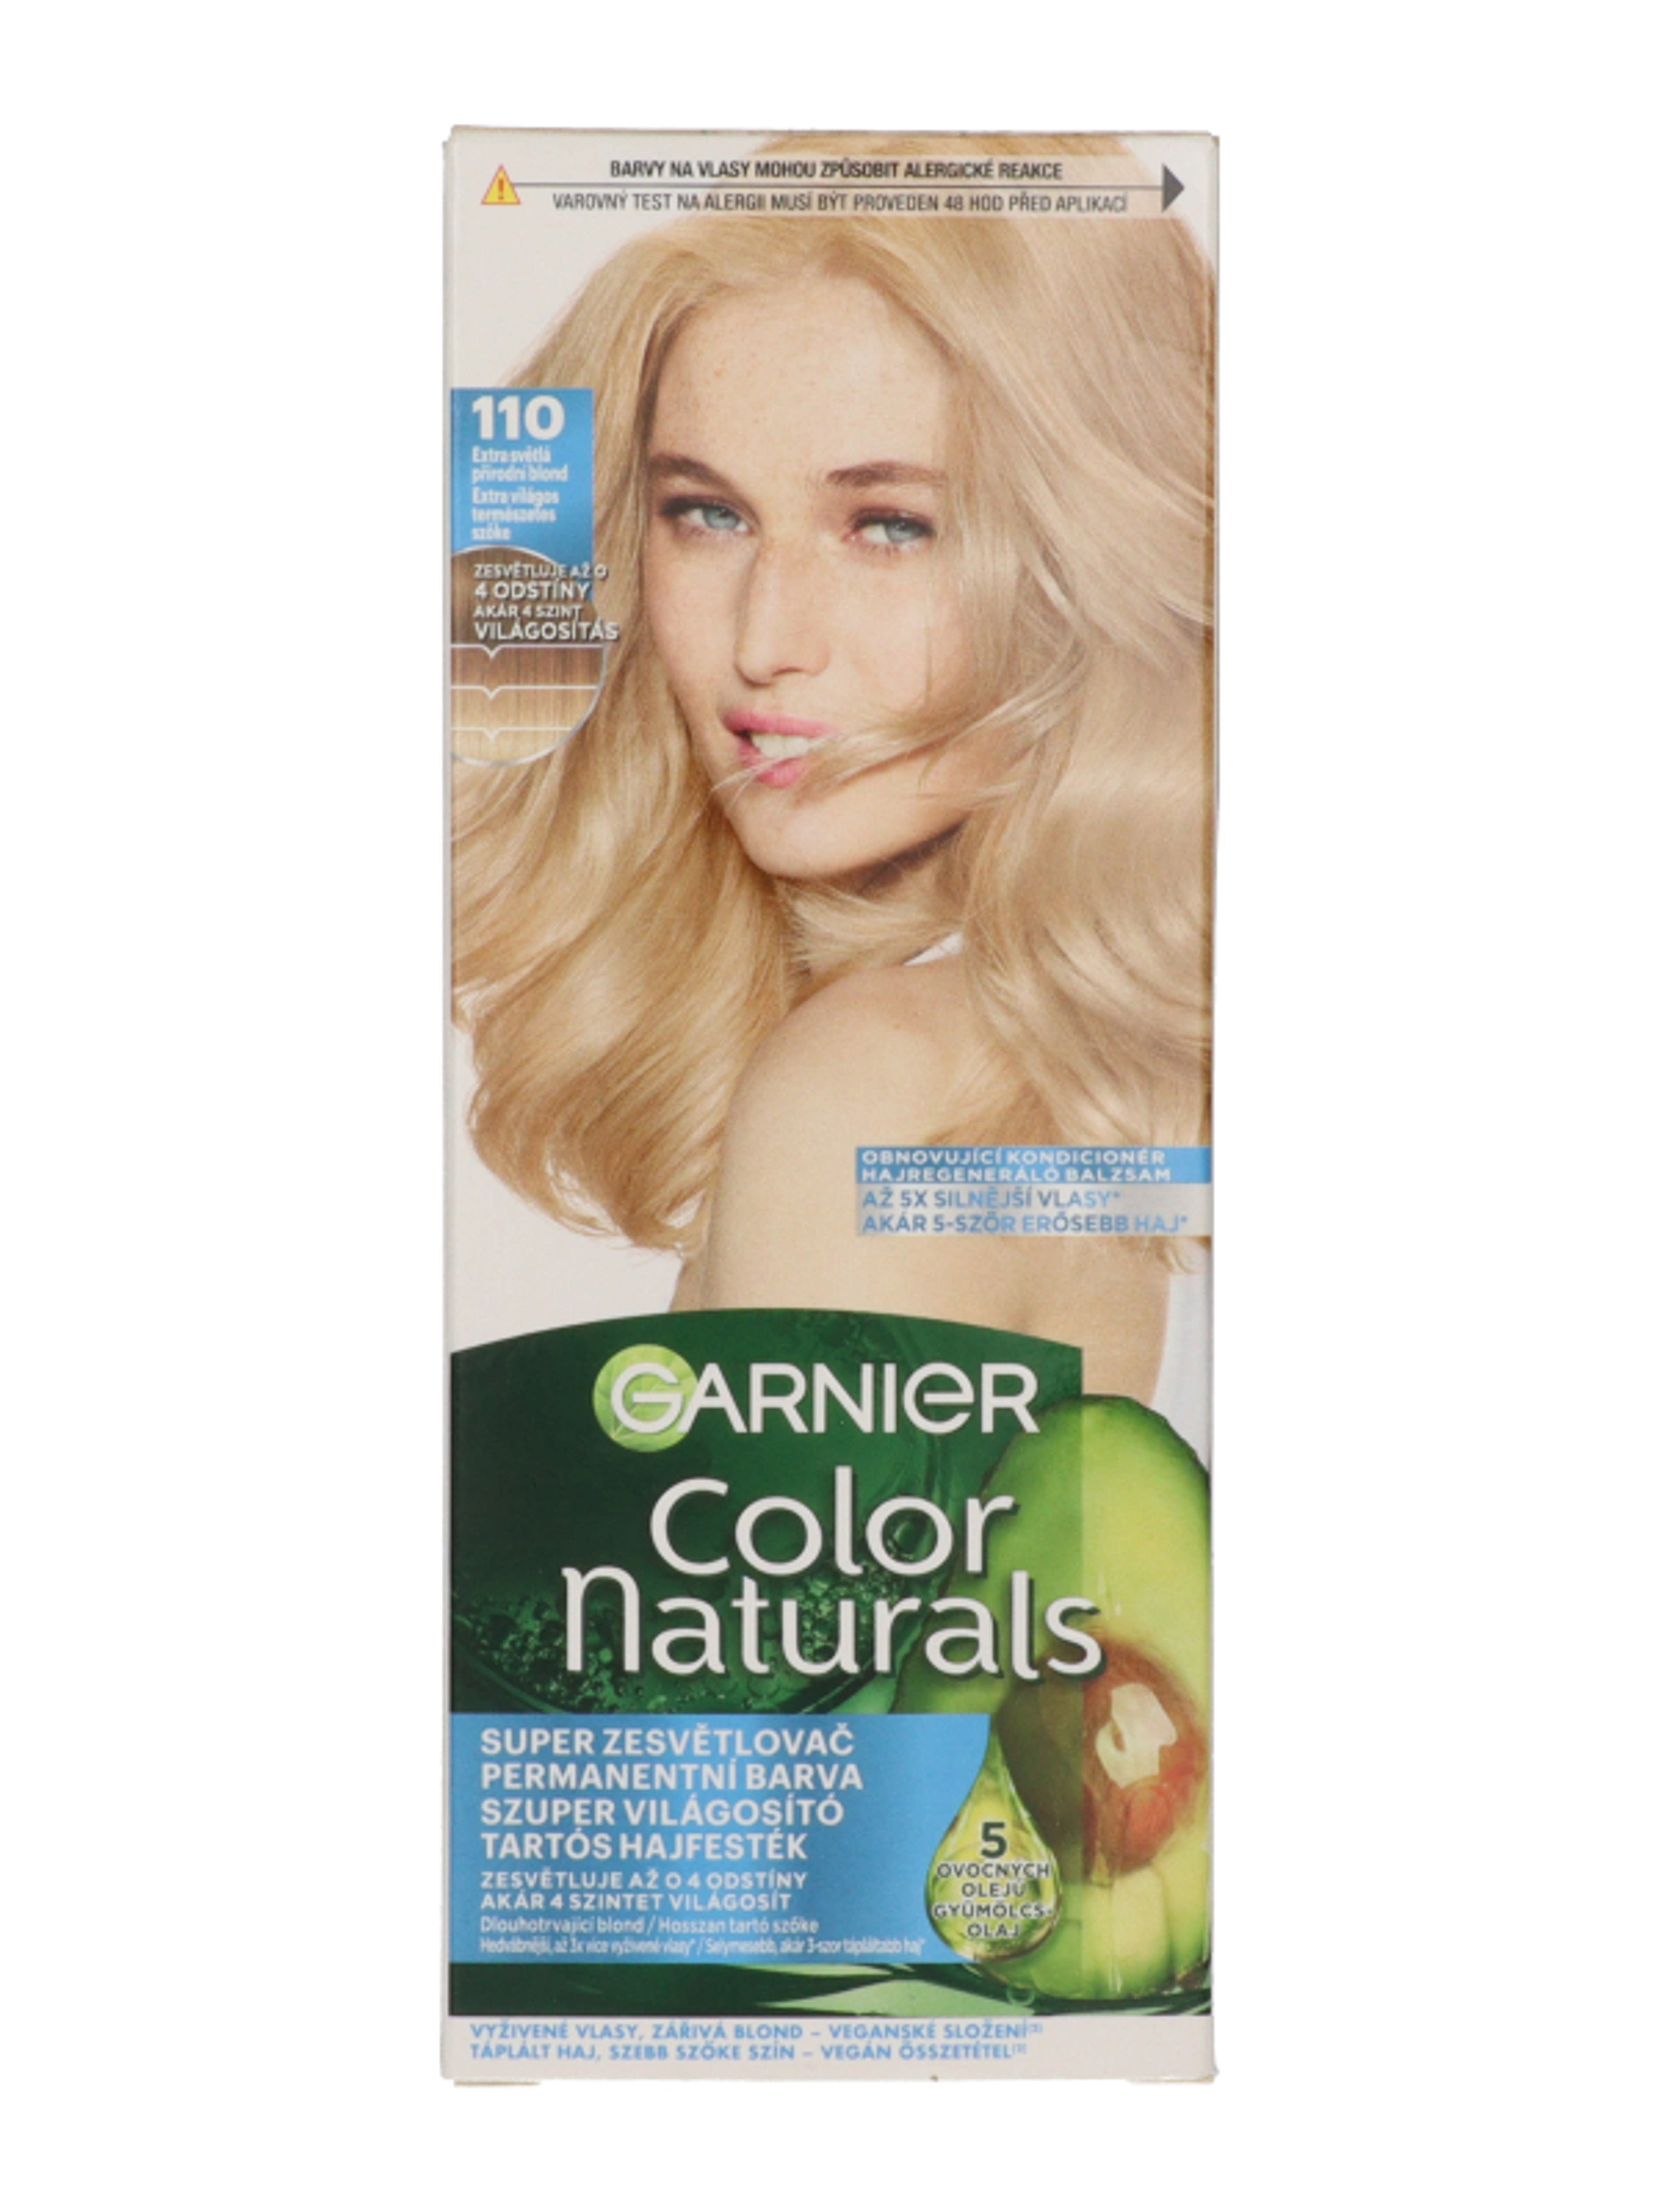 Garnier Color Naturals Tartós hajfesték /110 Extra Light Natural Blond - 1 db